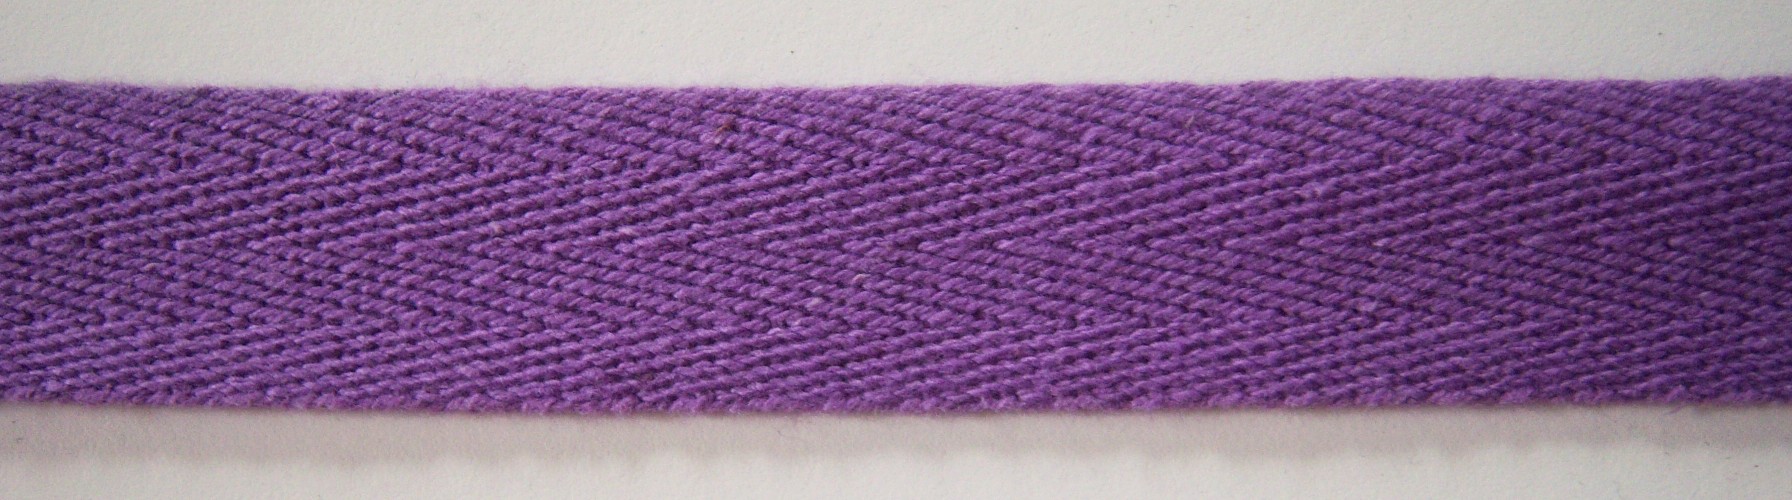 Lavender 1" Cotton Twill Tape